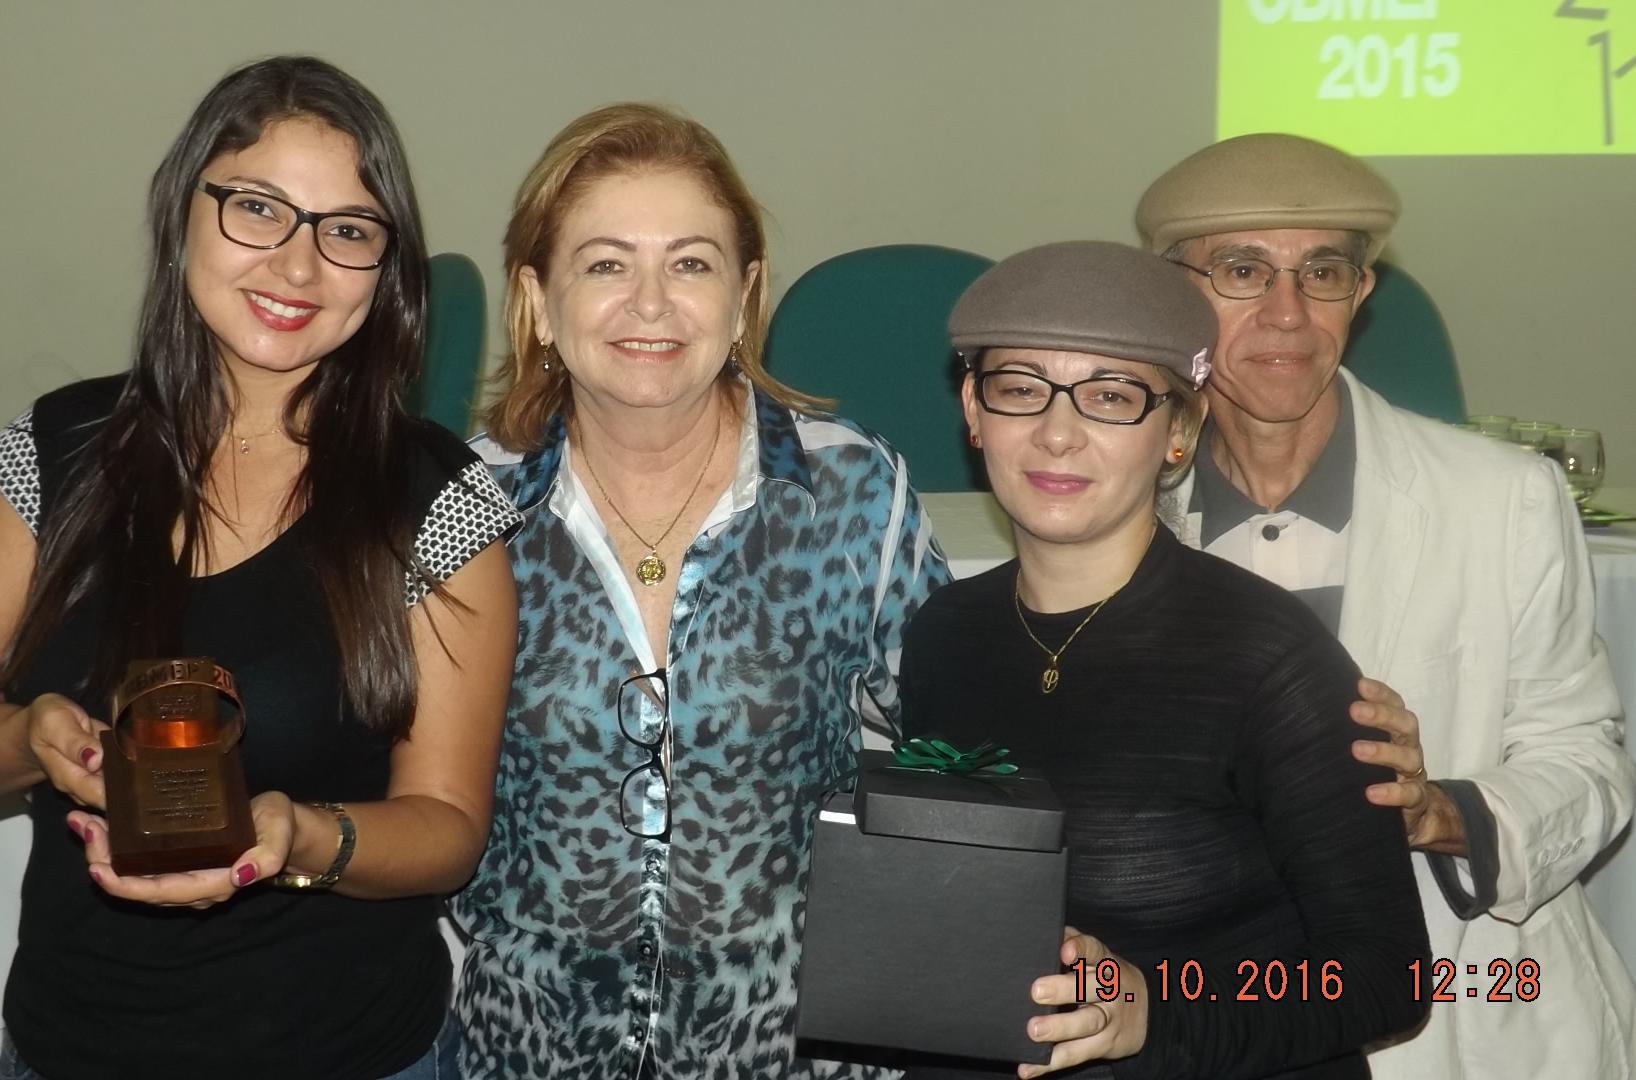 Escola Premiada recebe Troféu pelo Desempenho de sues Alunos na Edição da OBMEP 2015